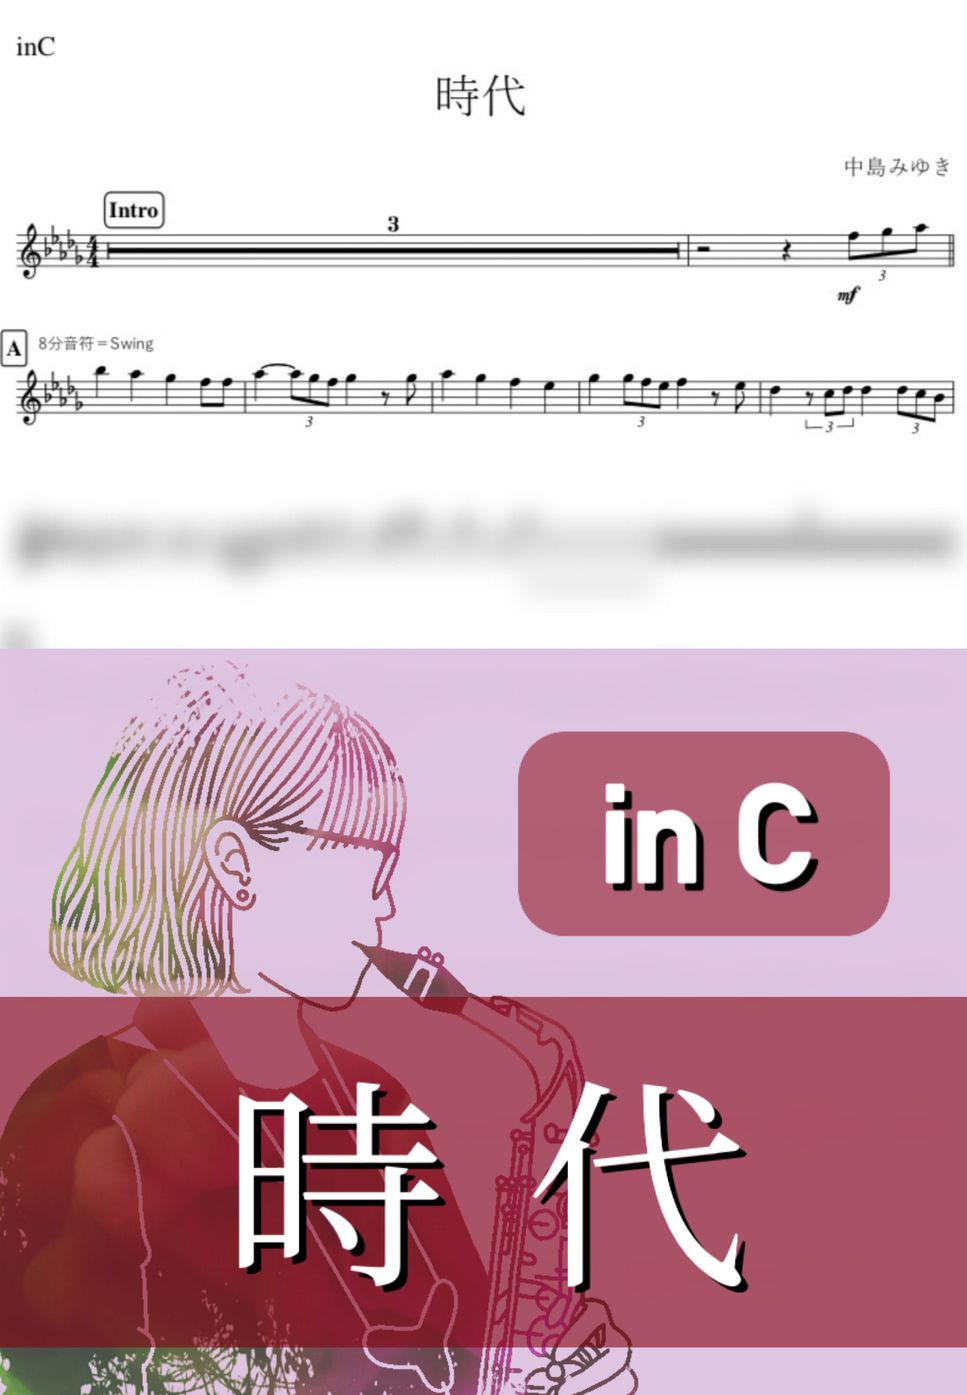 中島みゆき - 時代 (C) by kanamusic